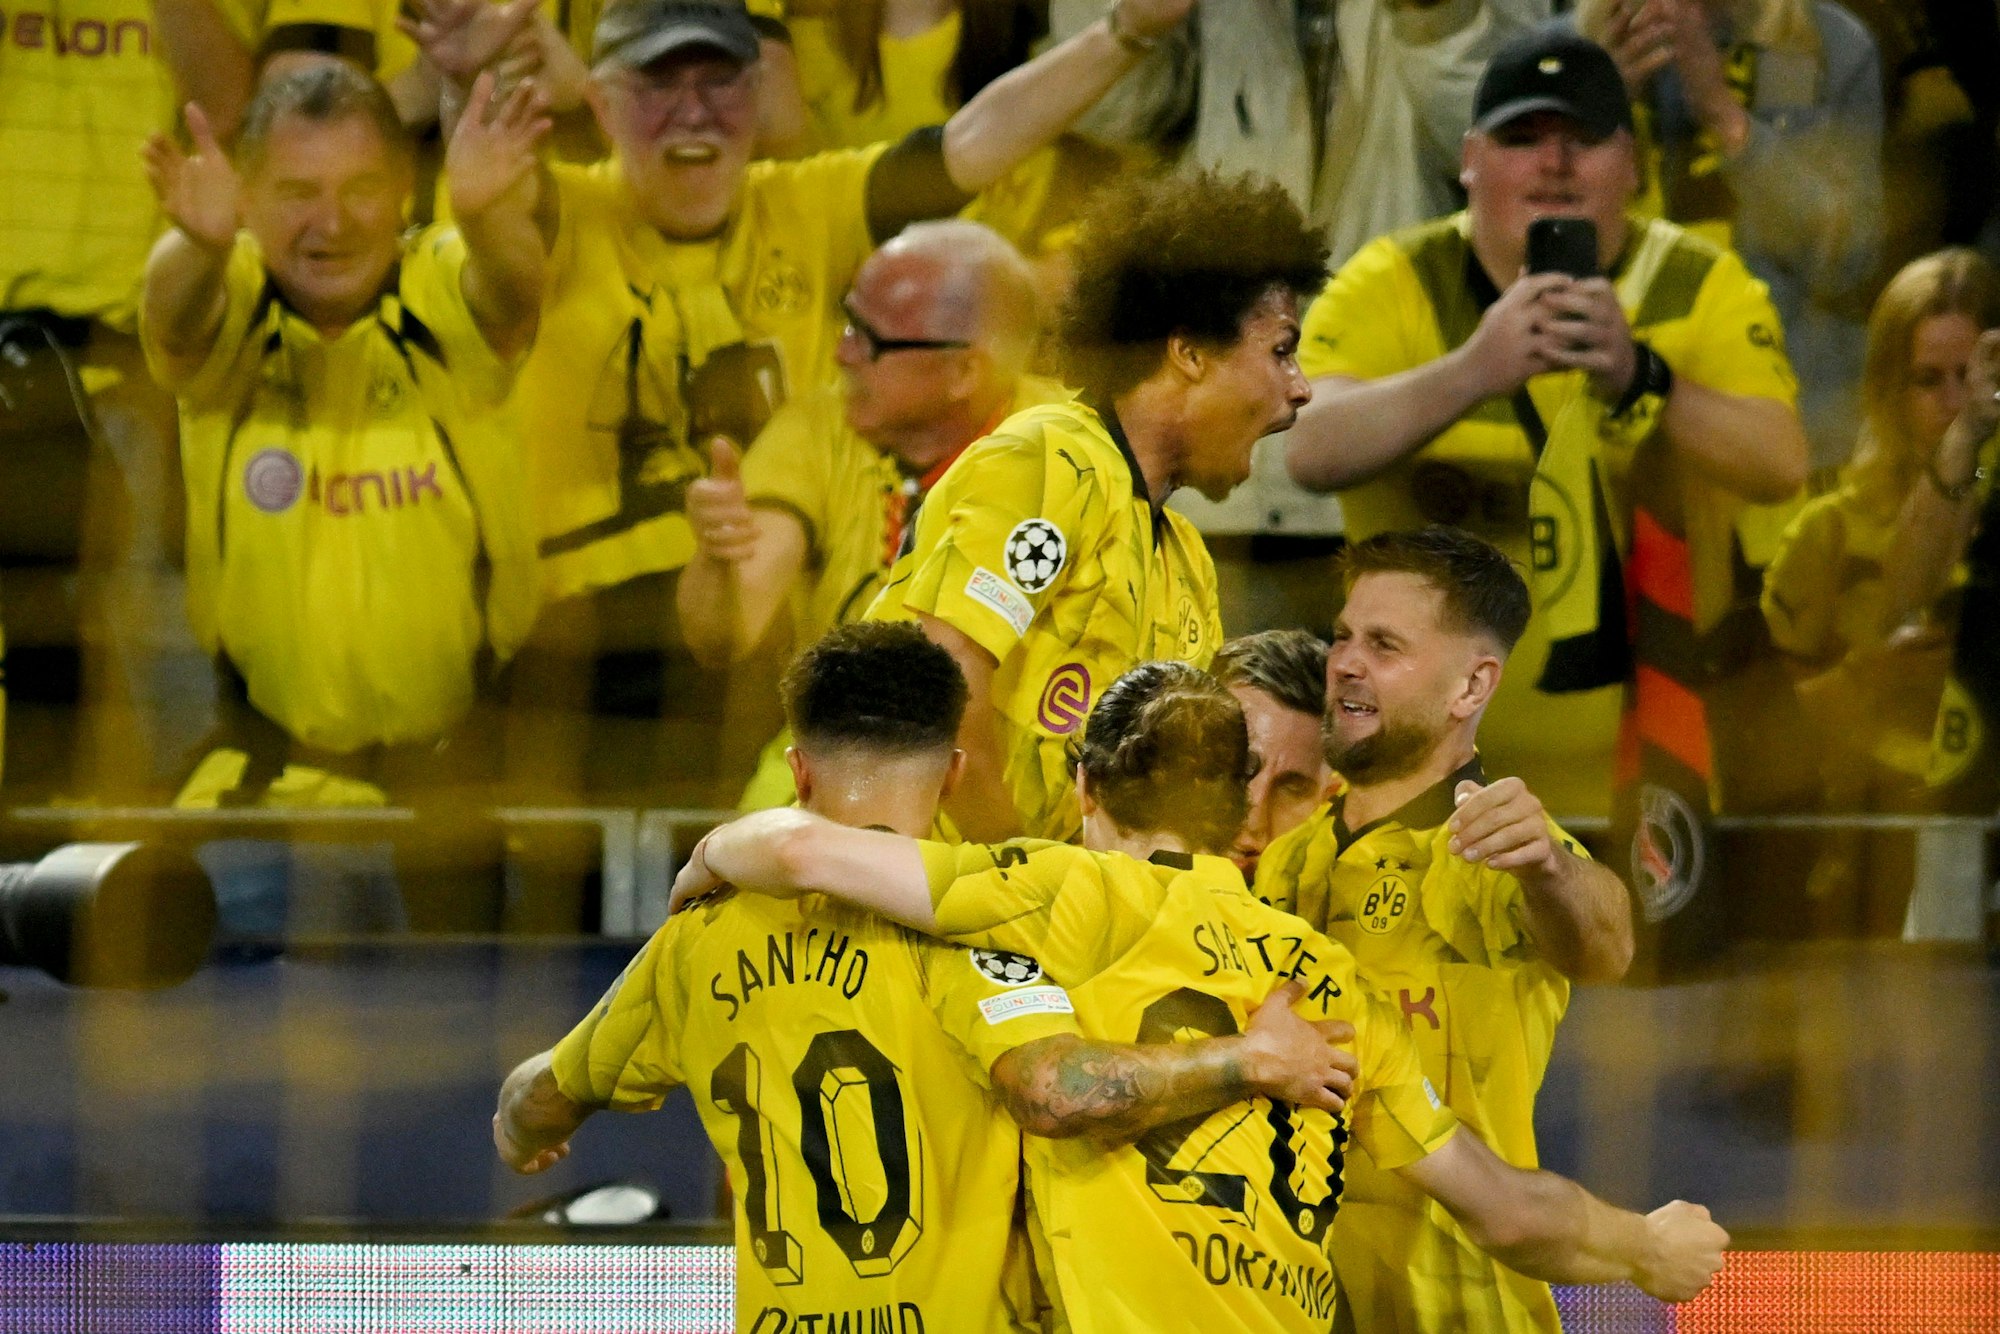 Borussia Dortmund bejubelt den entscheidenden Treffer von Niclas Füllkrug (r.) im Halbfinal-Hinspiel der Champions League gegen Paris Saint-Germain.